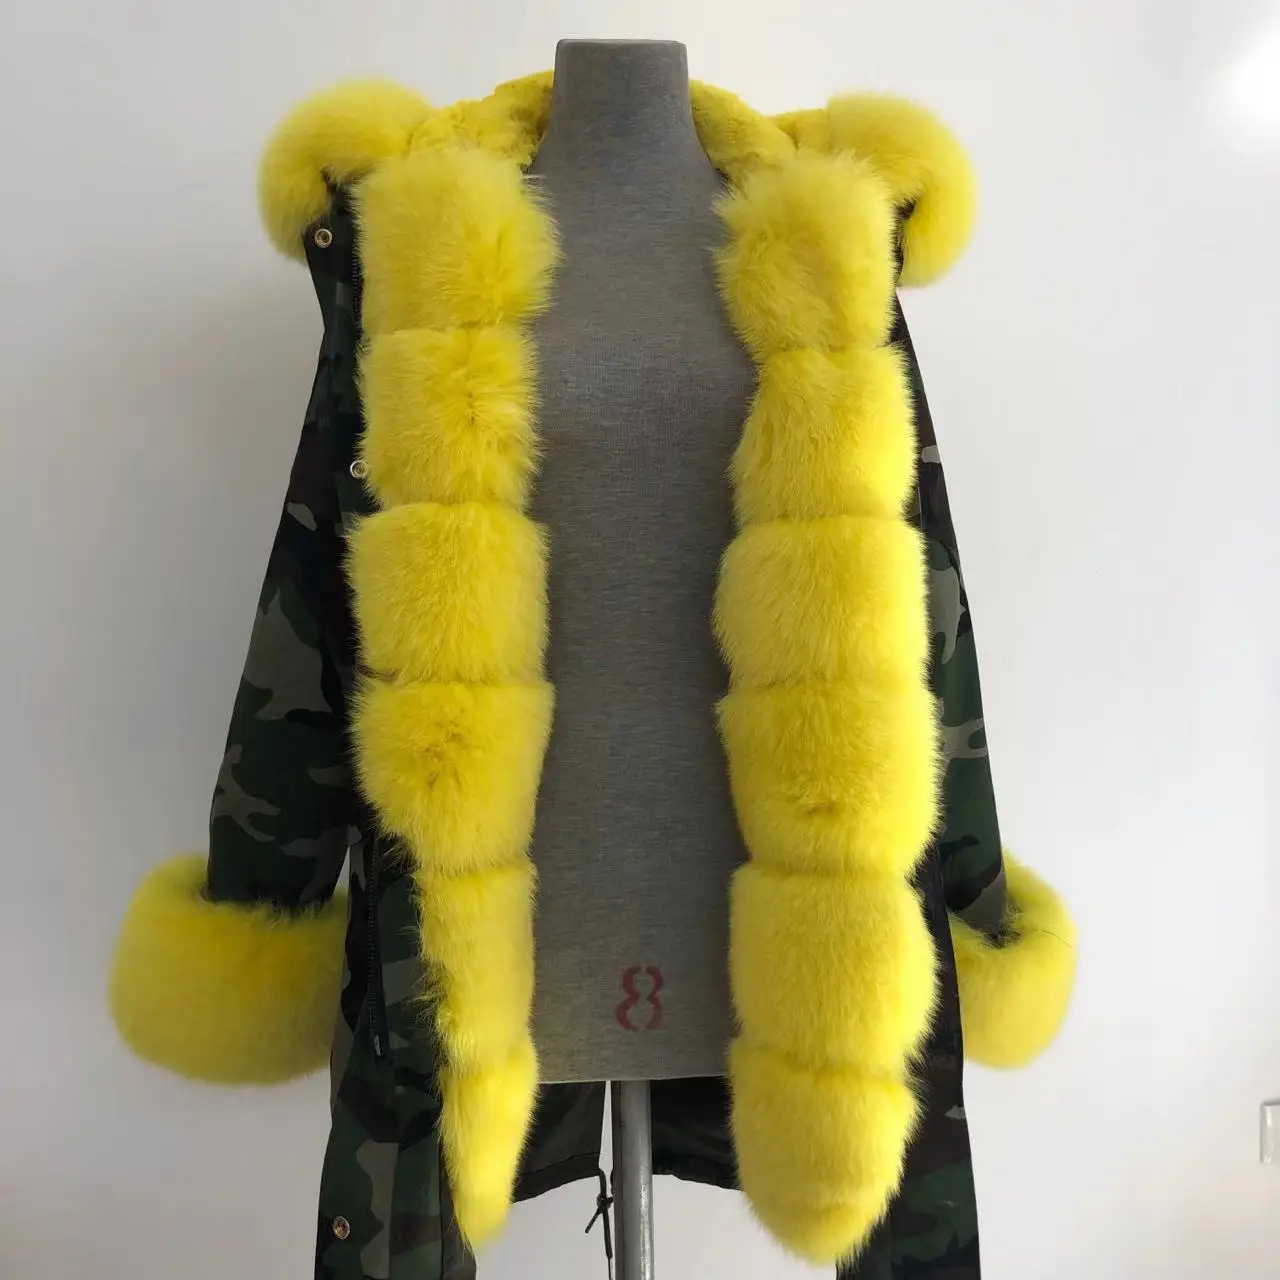 Inverno feminino casaco quente médio-longo engrossar outwear 2022 senhoras com capuz wadded casaco fino parka algodão-acolchoado casaco